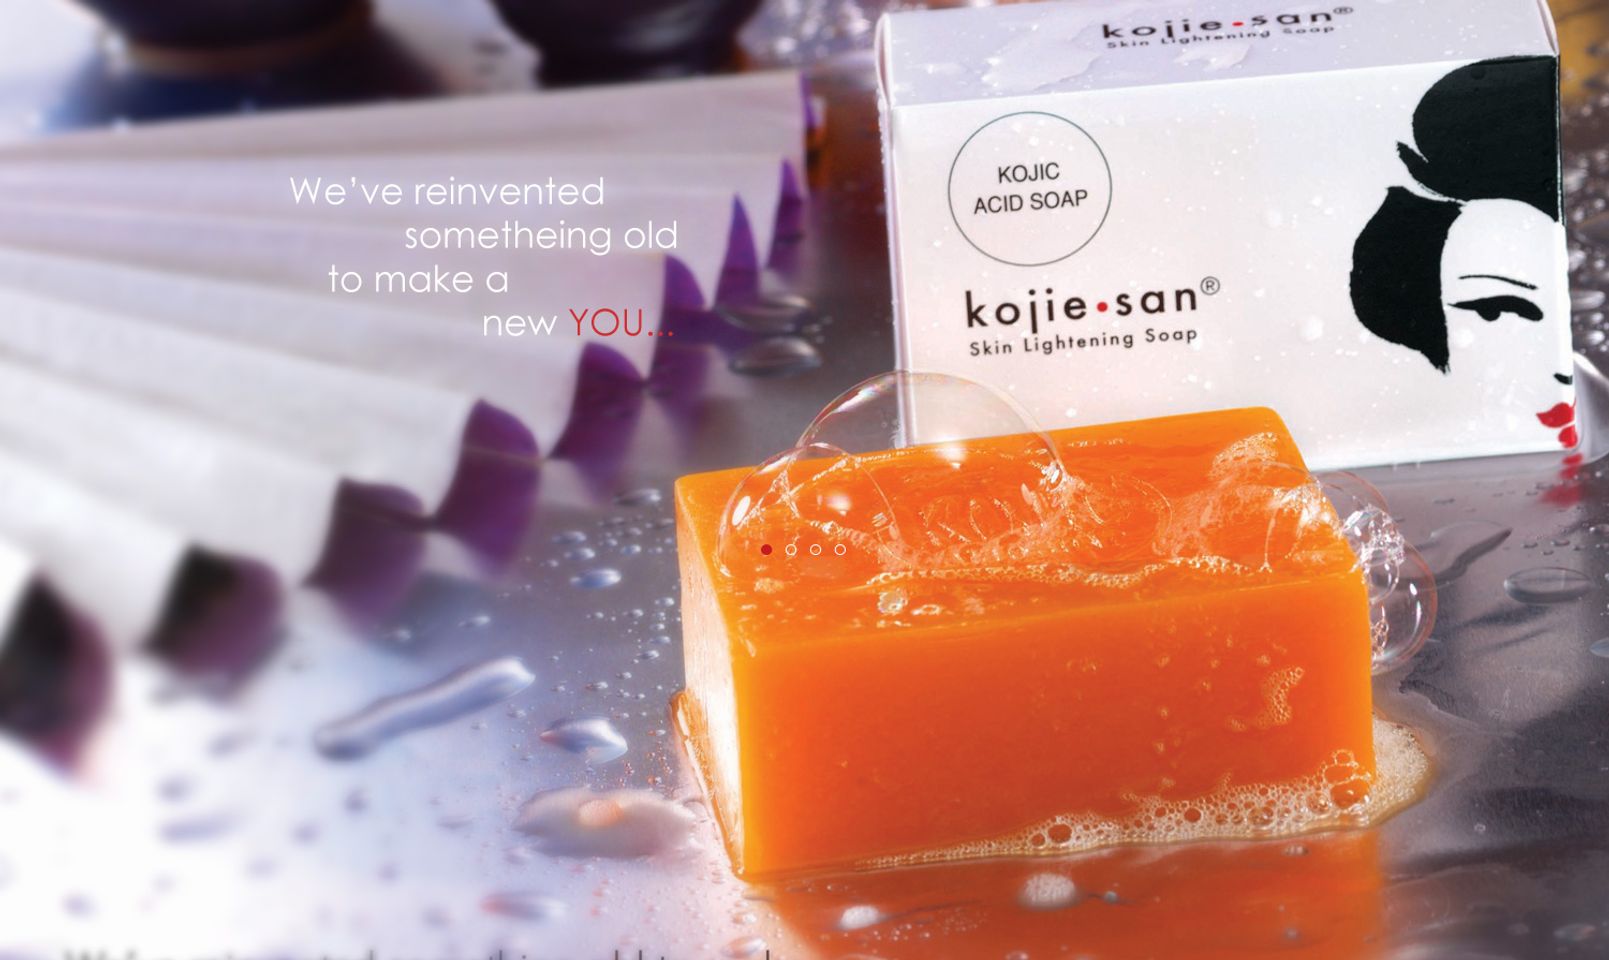 Kojie San Skin Lightening Soap dùng cho mặt và cả toàn thân được